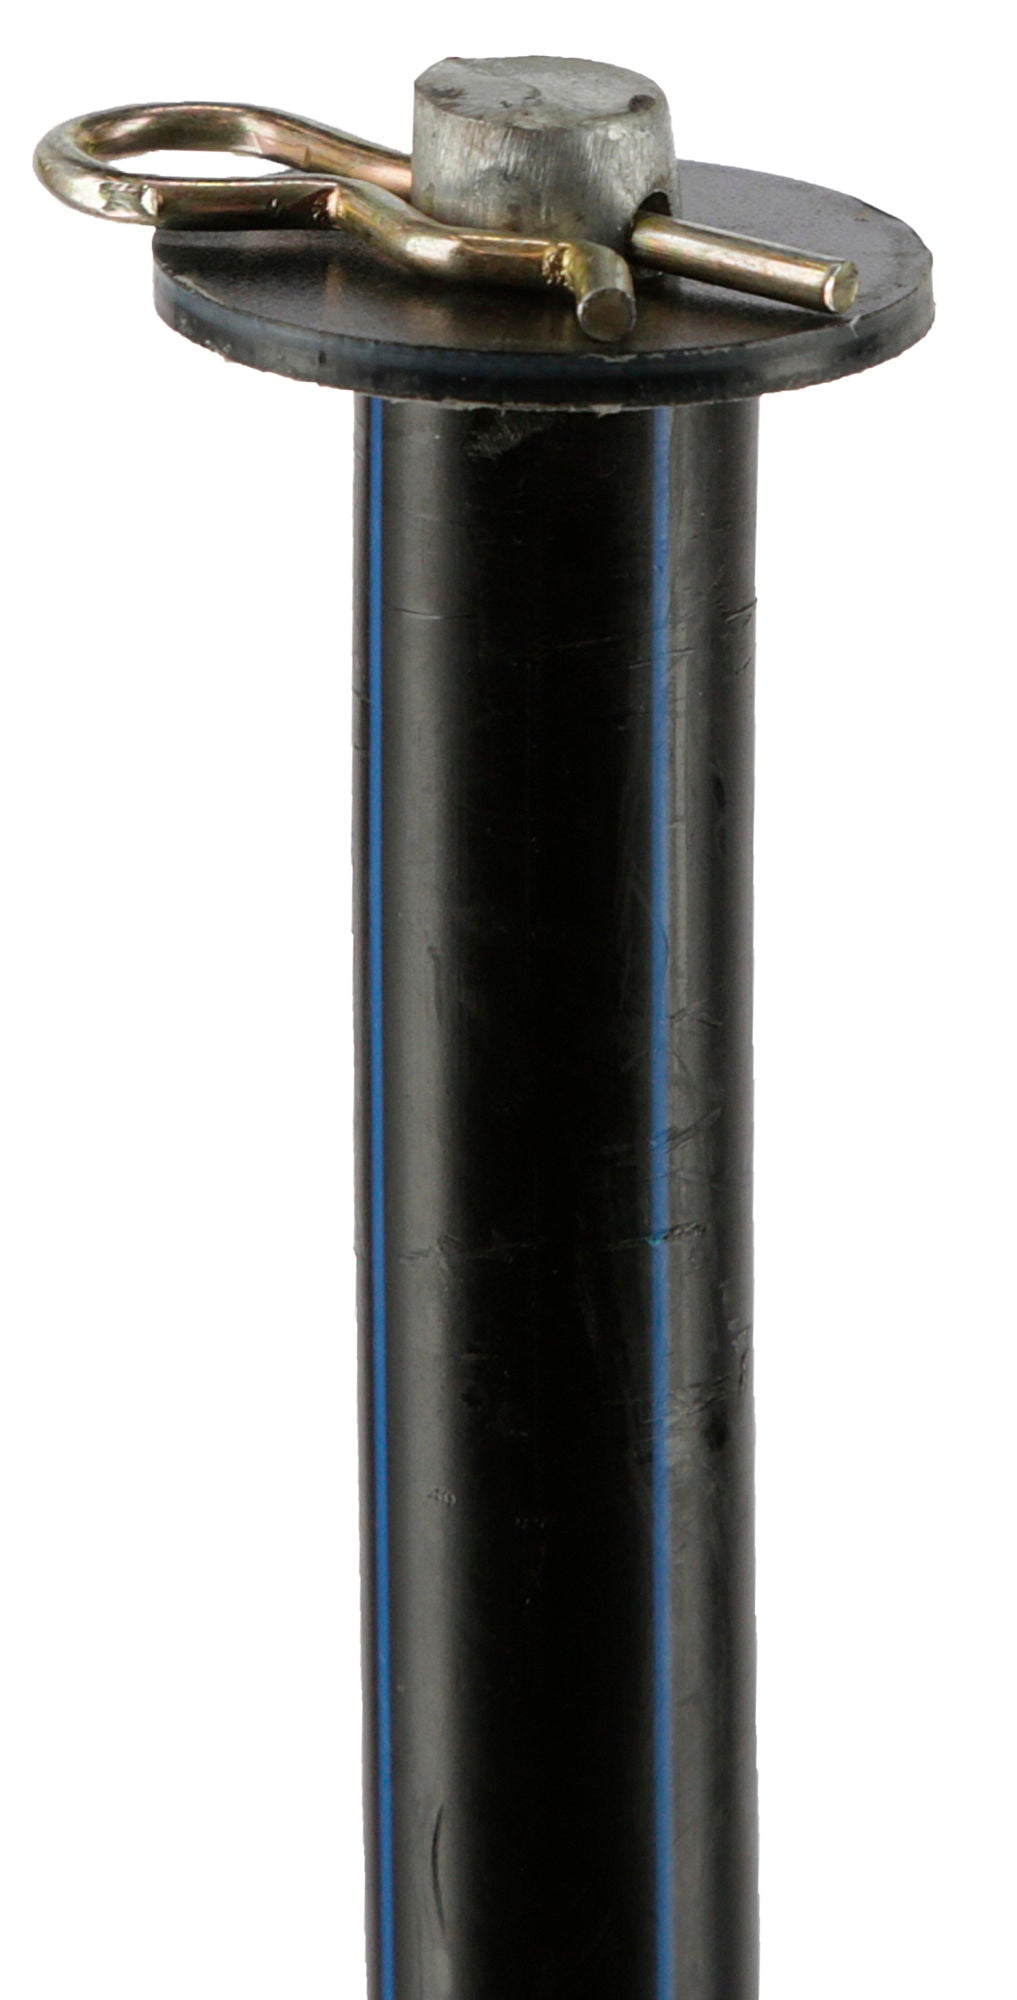 Unterstützungspfahl für Weidenetze, 145cm, Ø14mm,verzinkt, VPE 4Stück